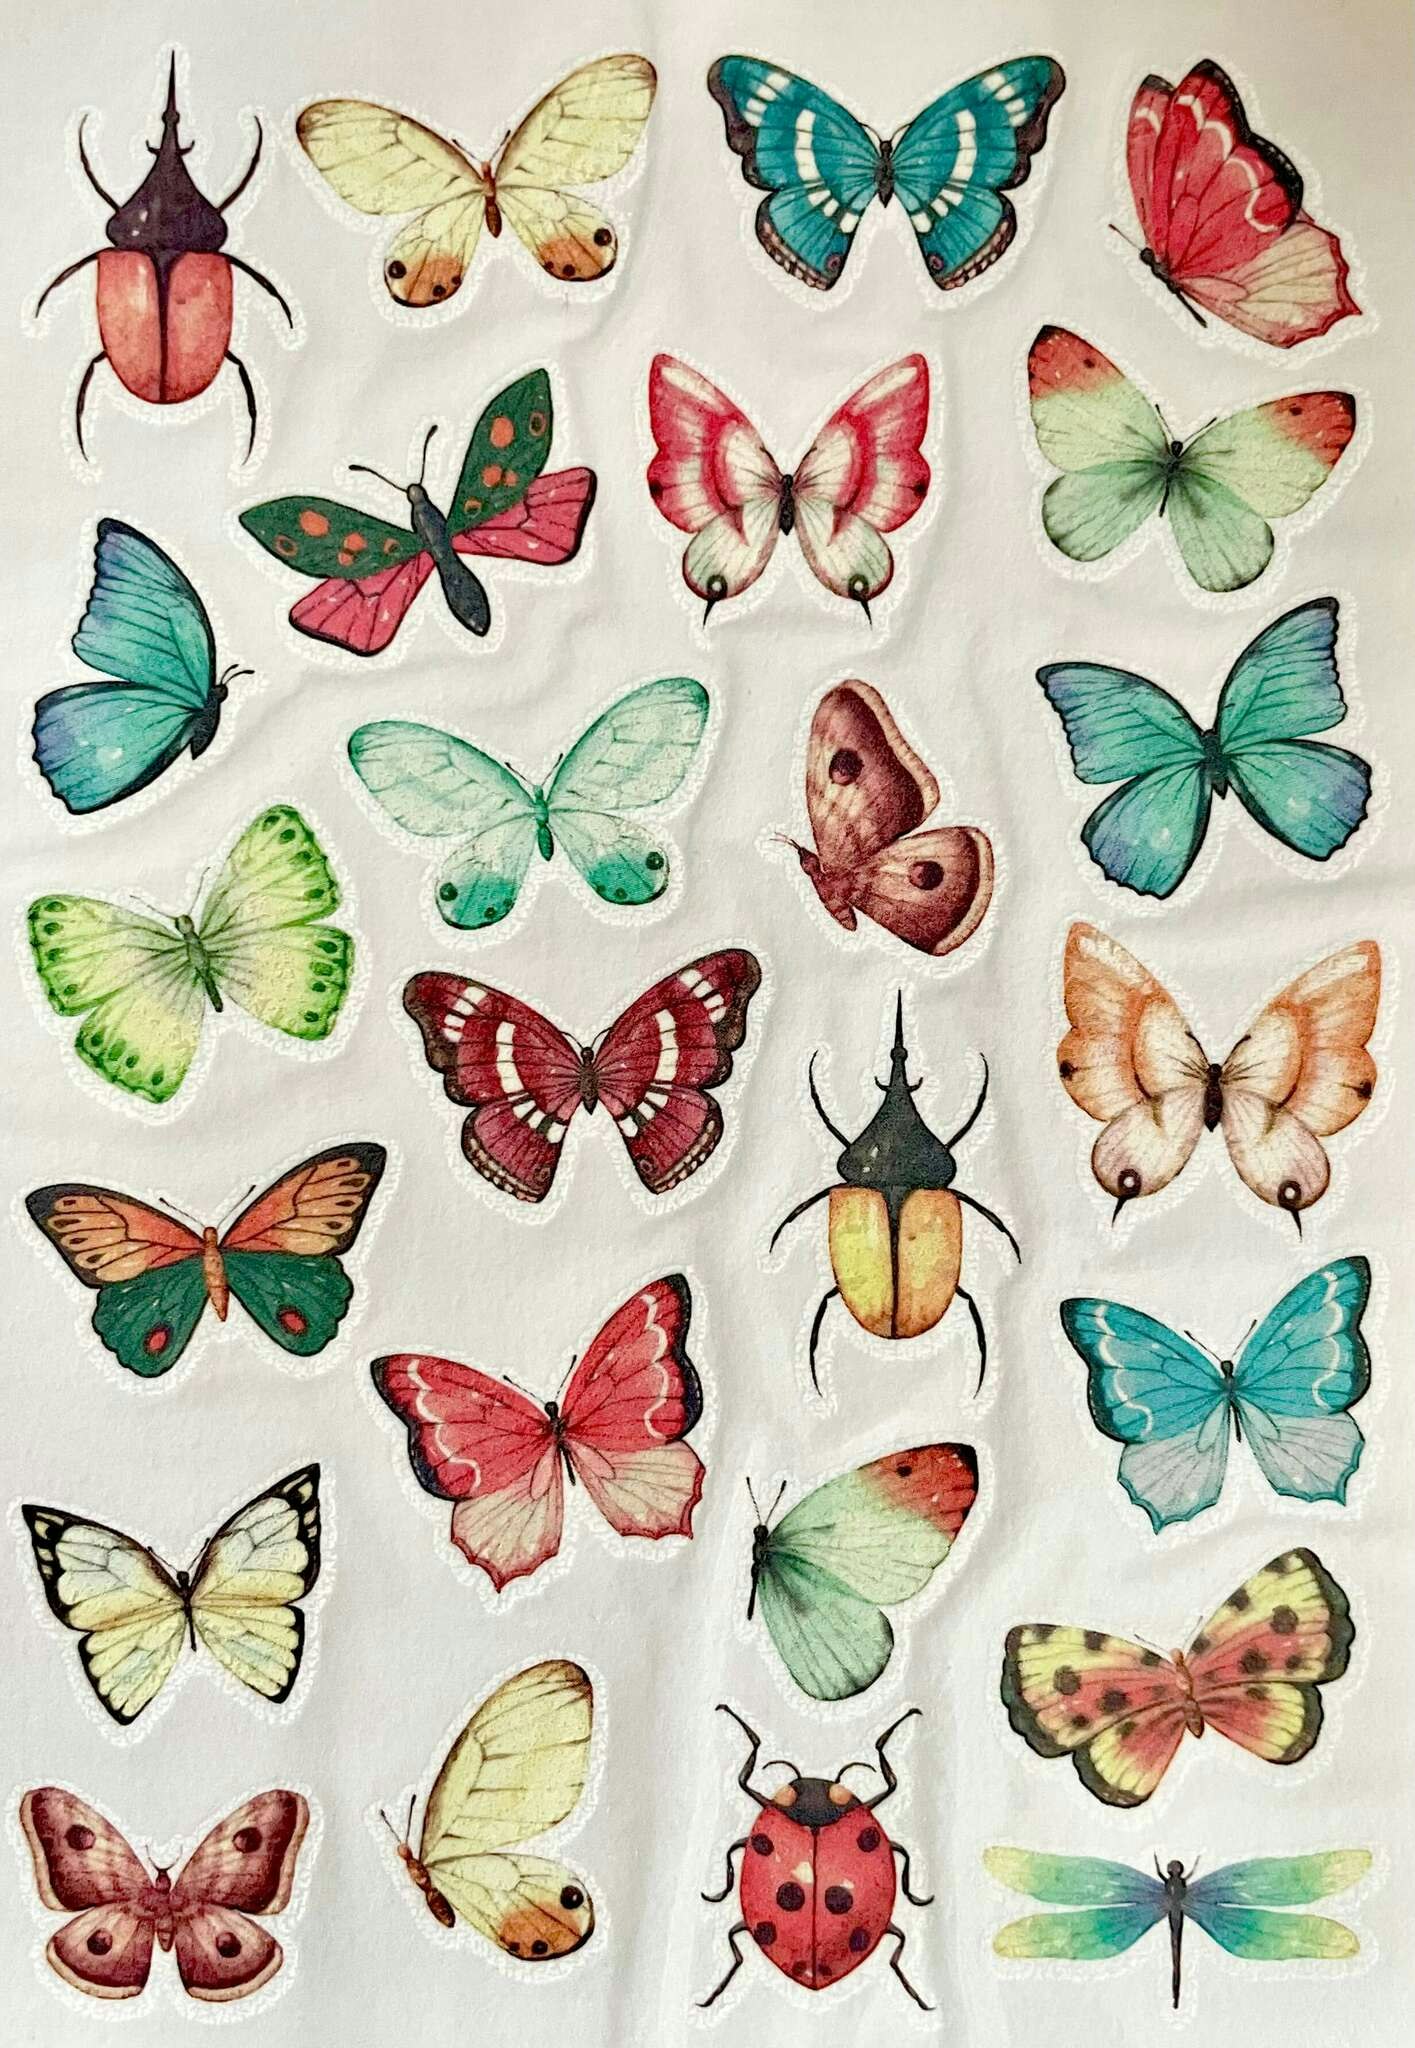 Underbara Tatueringar - Fjärilar och skalbaggar (Fraktfritt)